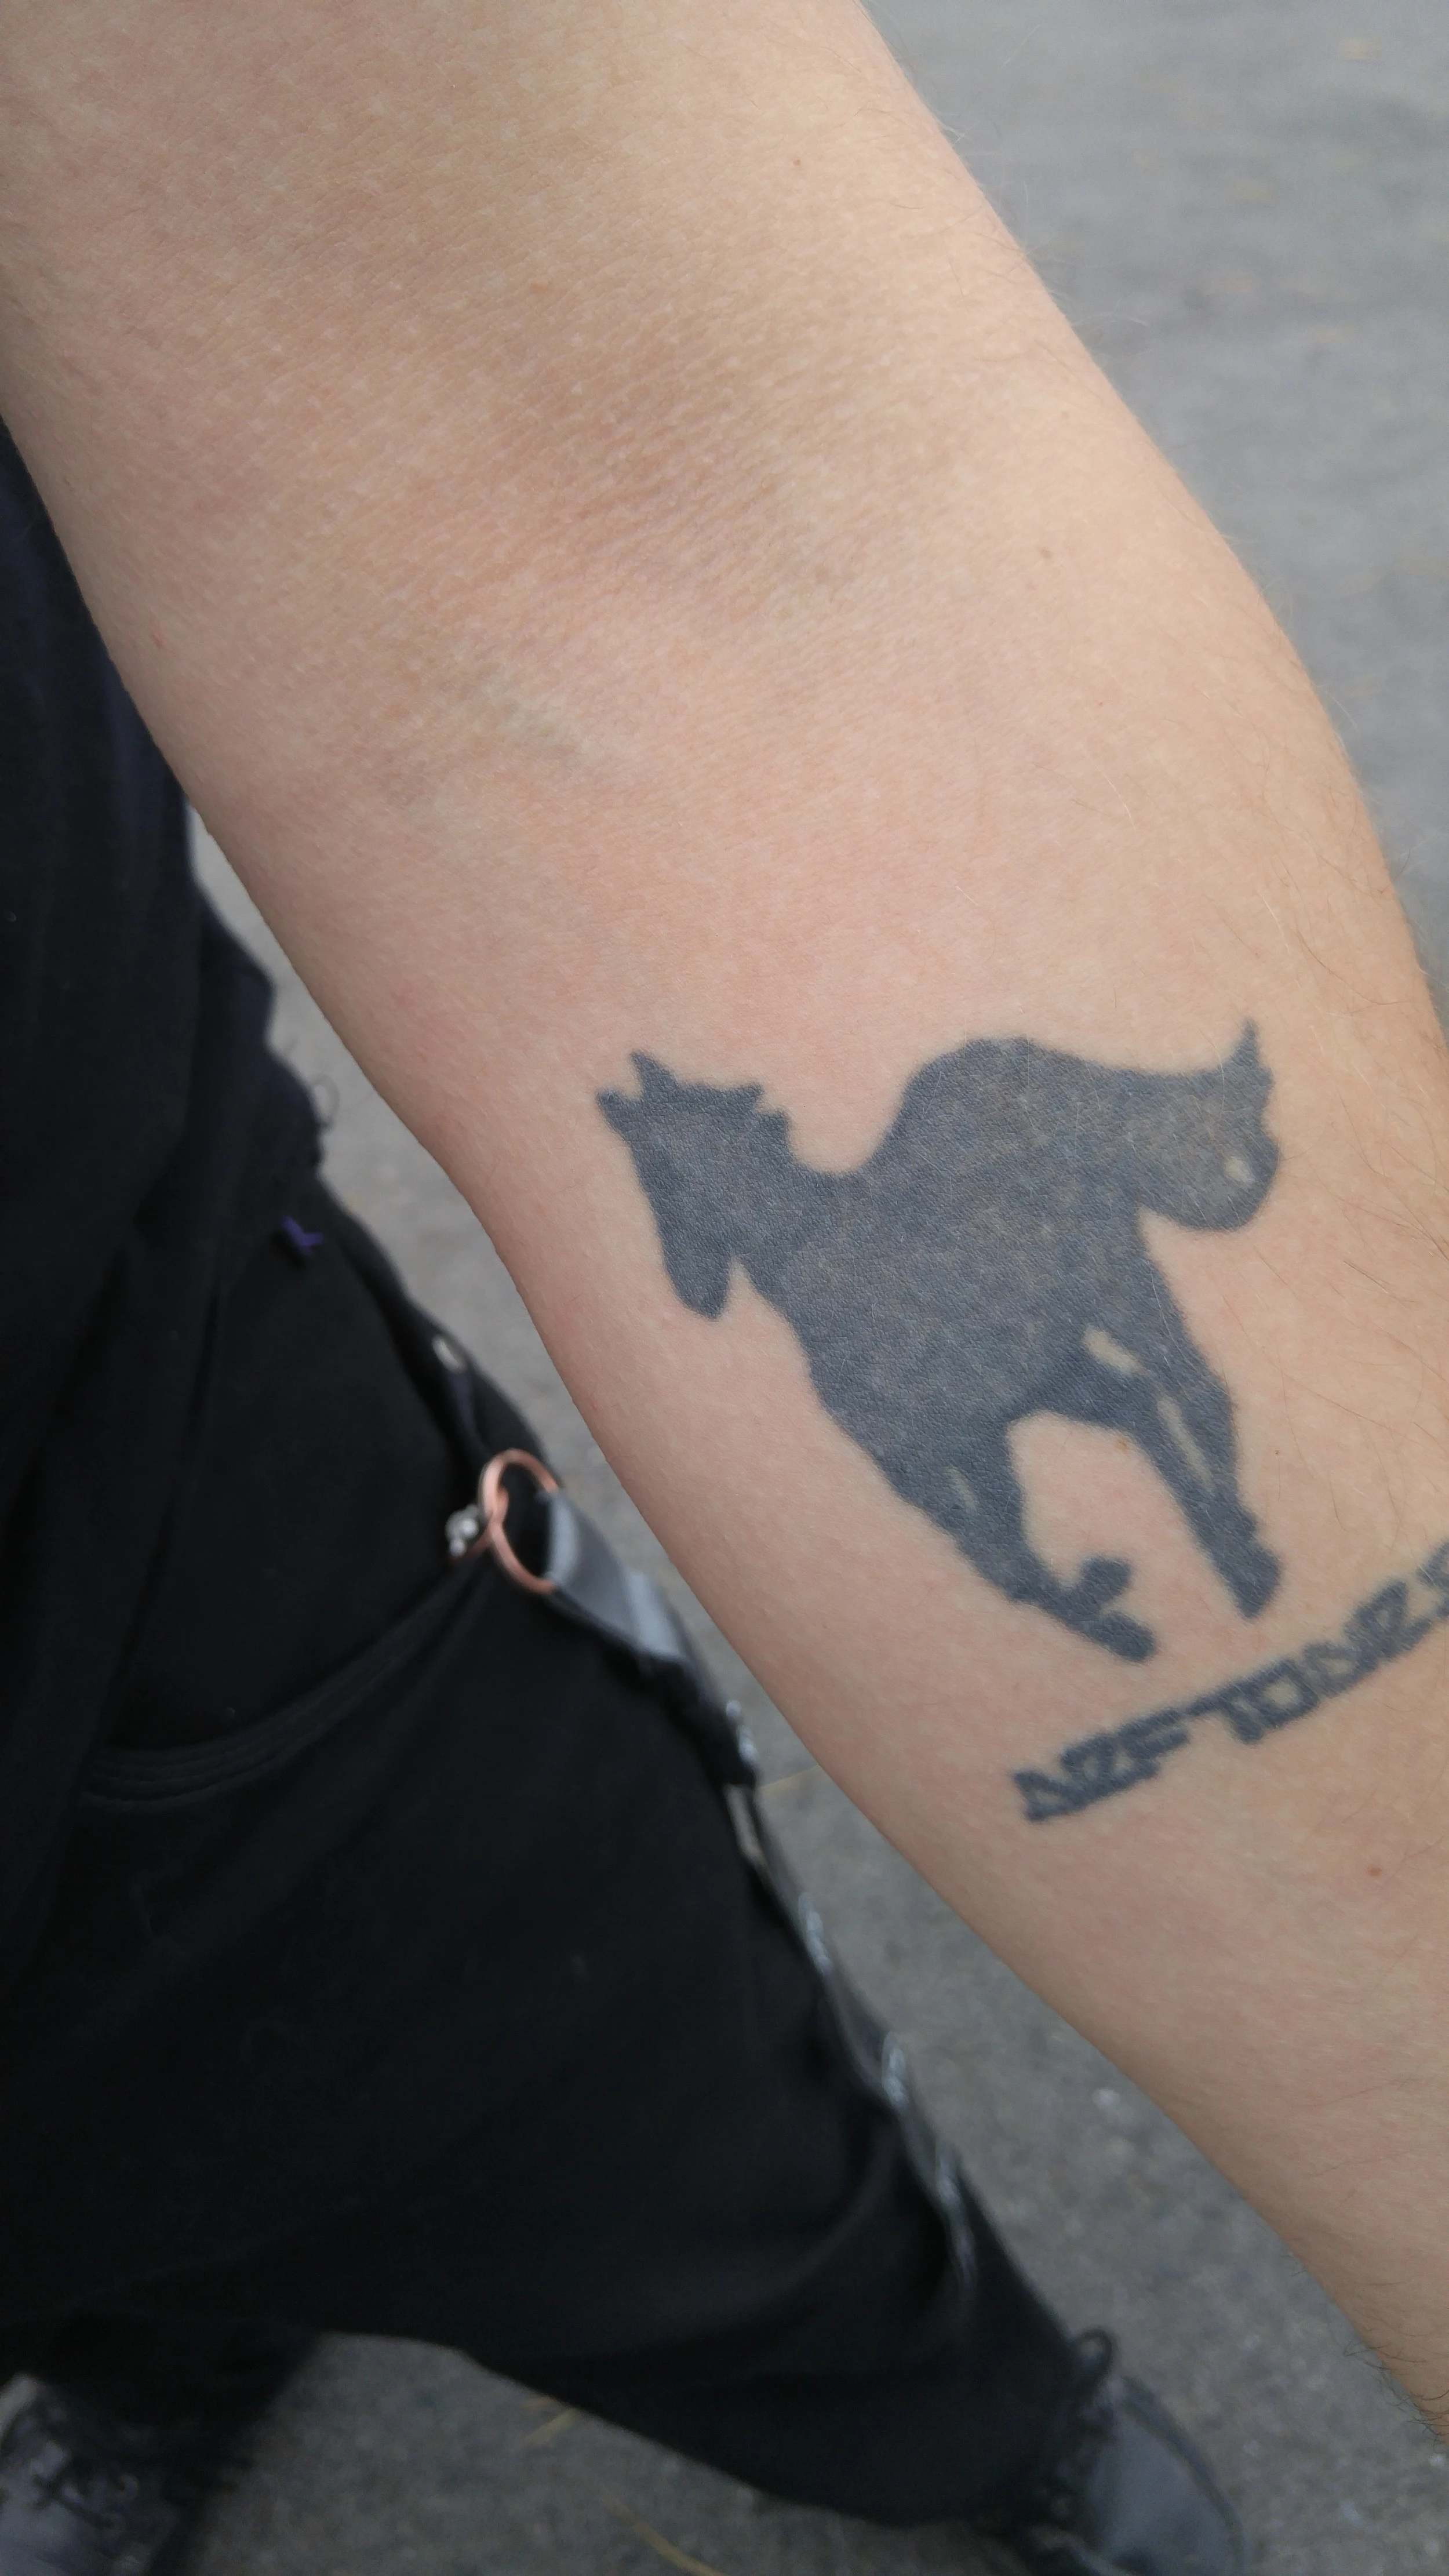 Deftones White Pony Tattoo  Deftones tattoo Tattoo shop Tattoos